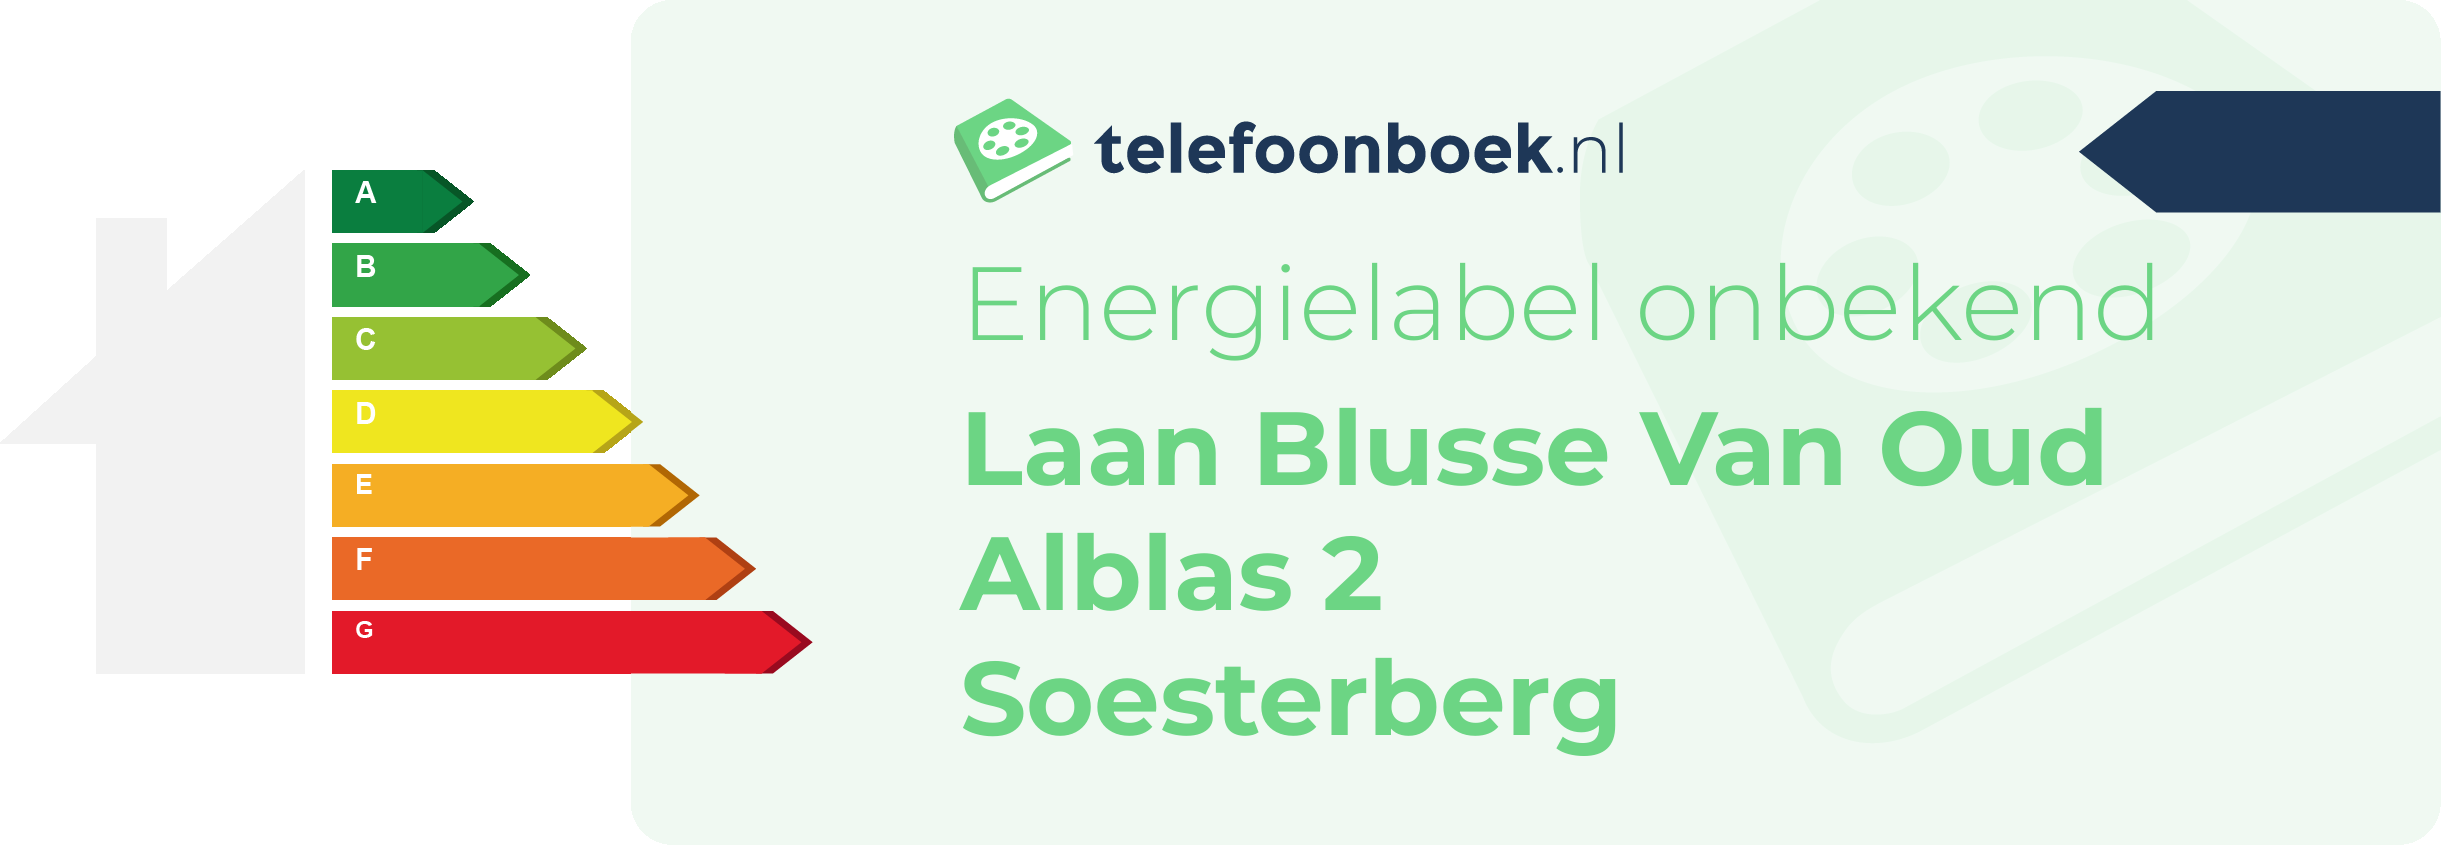 Energielabel Laan Blusse Van Oud Alblas 2 Soesterberg